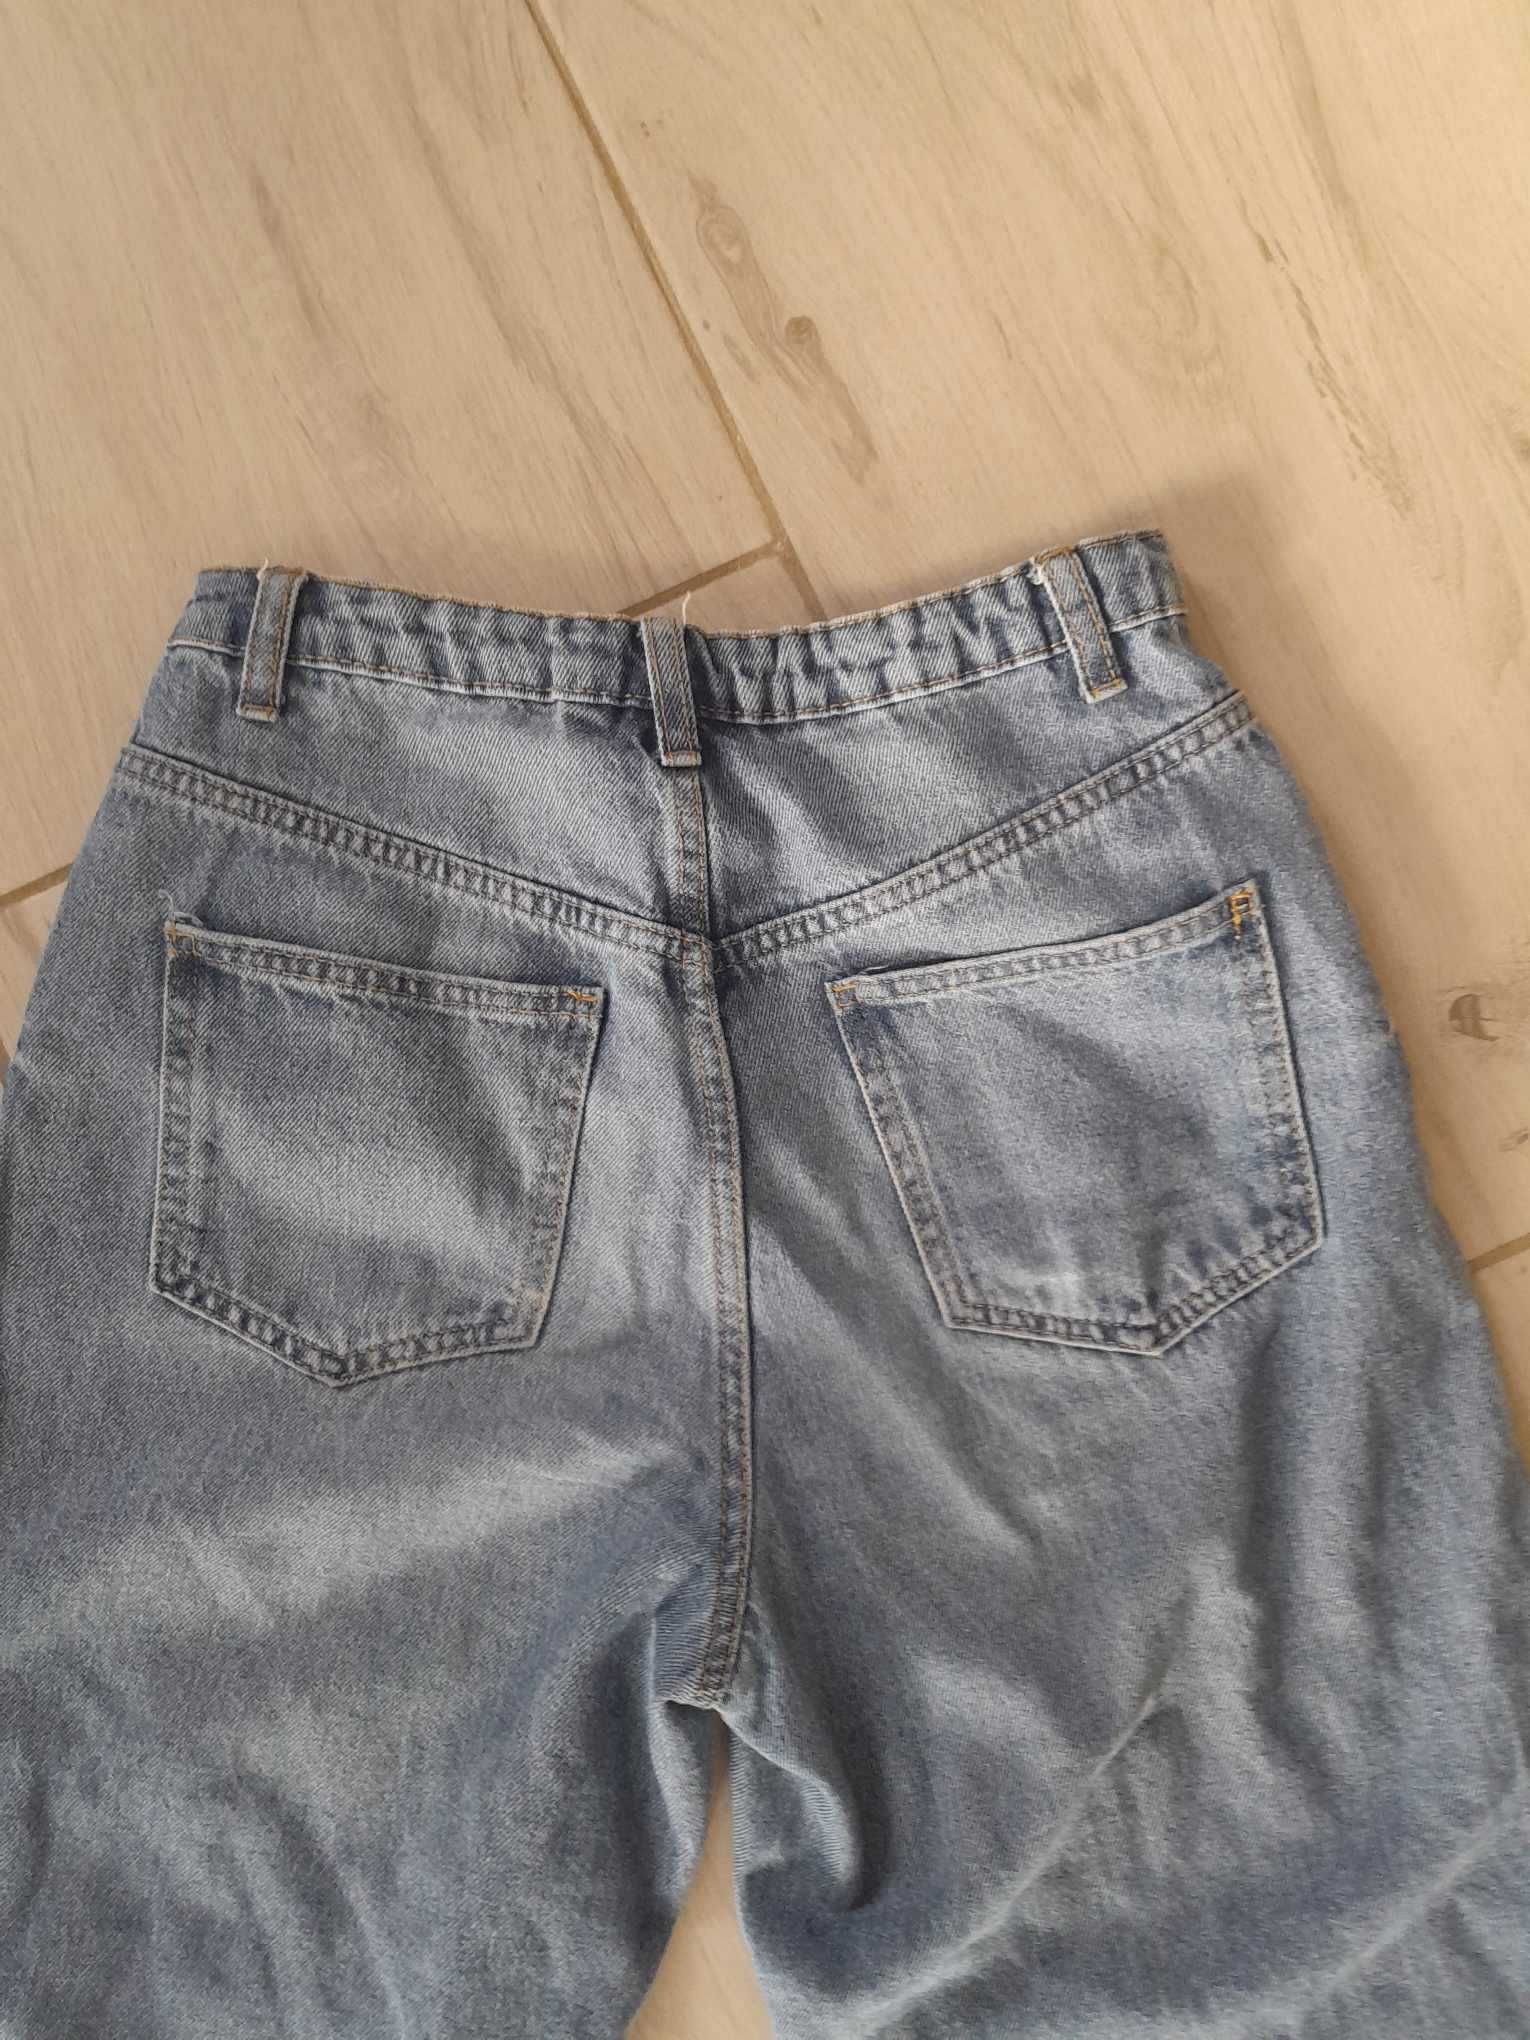 Spodnie jeans dziewczęce z dziurami rozmiar 165